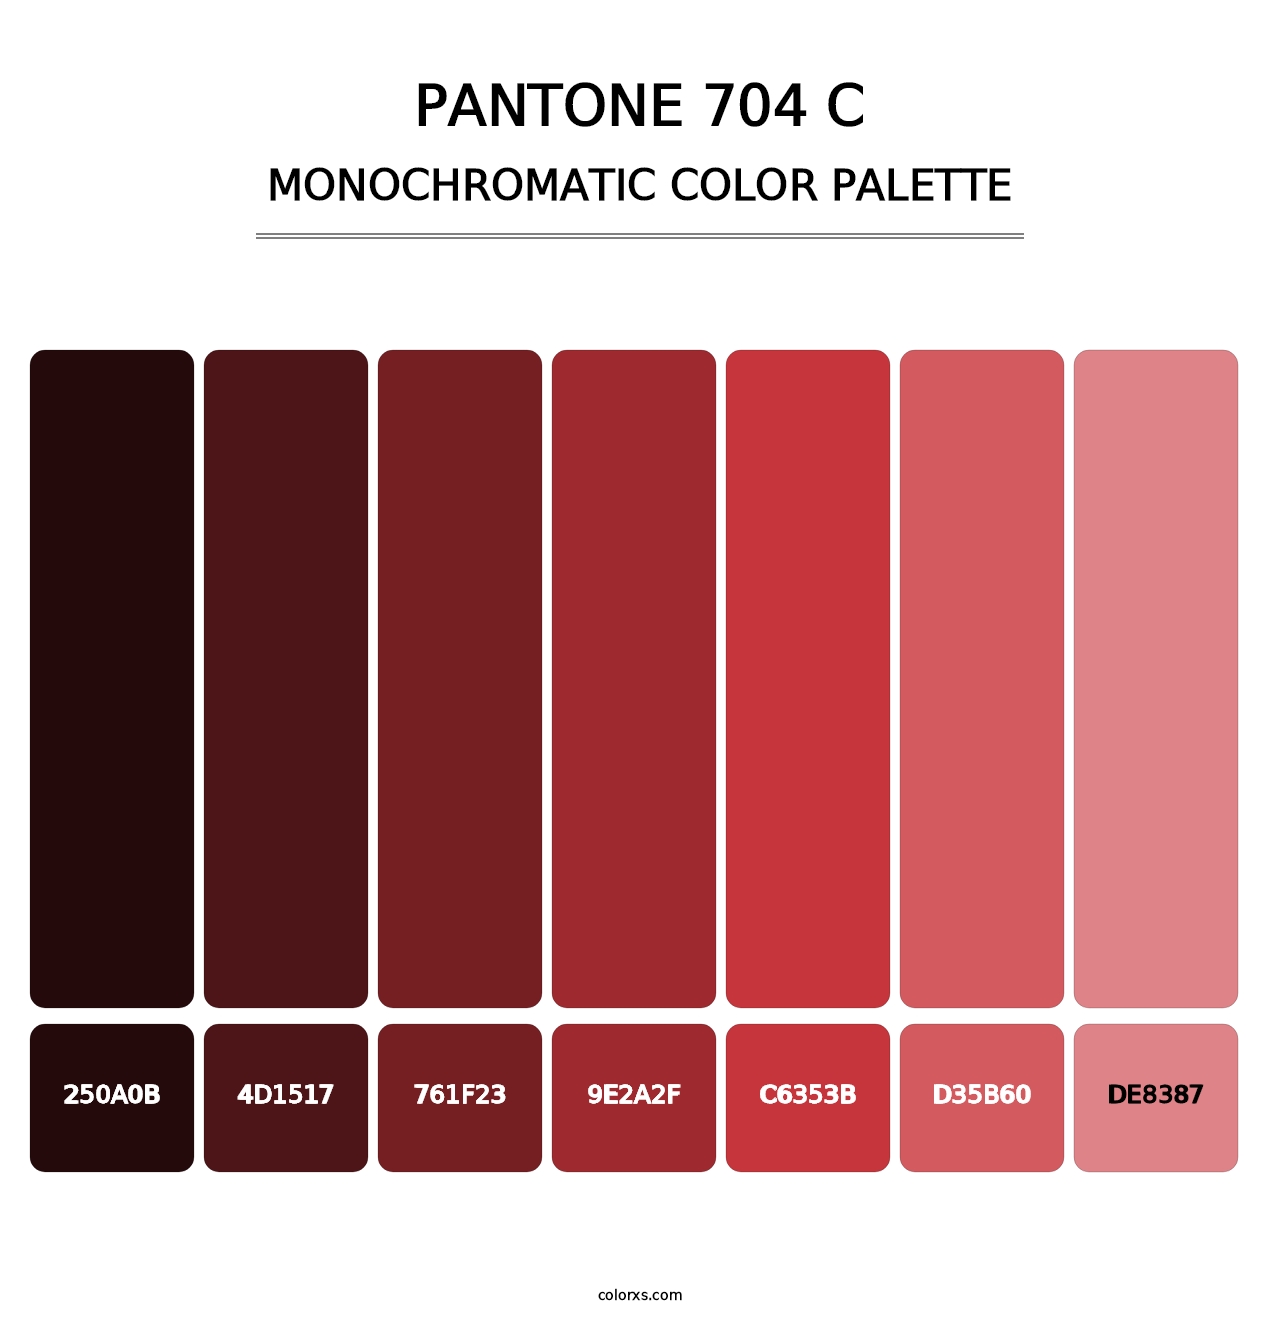 PANTONE 704 C - Monochromatic Color Palette